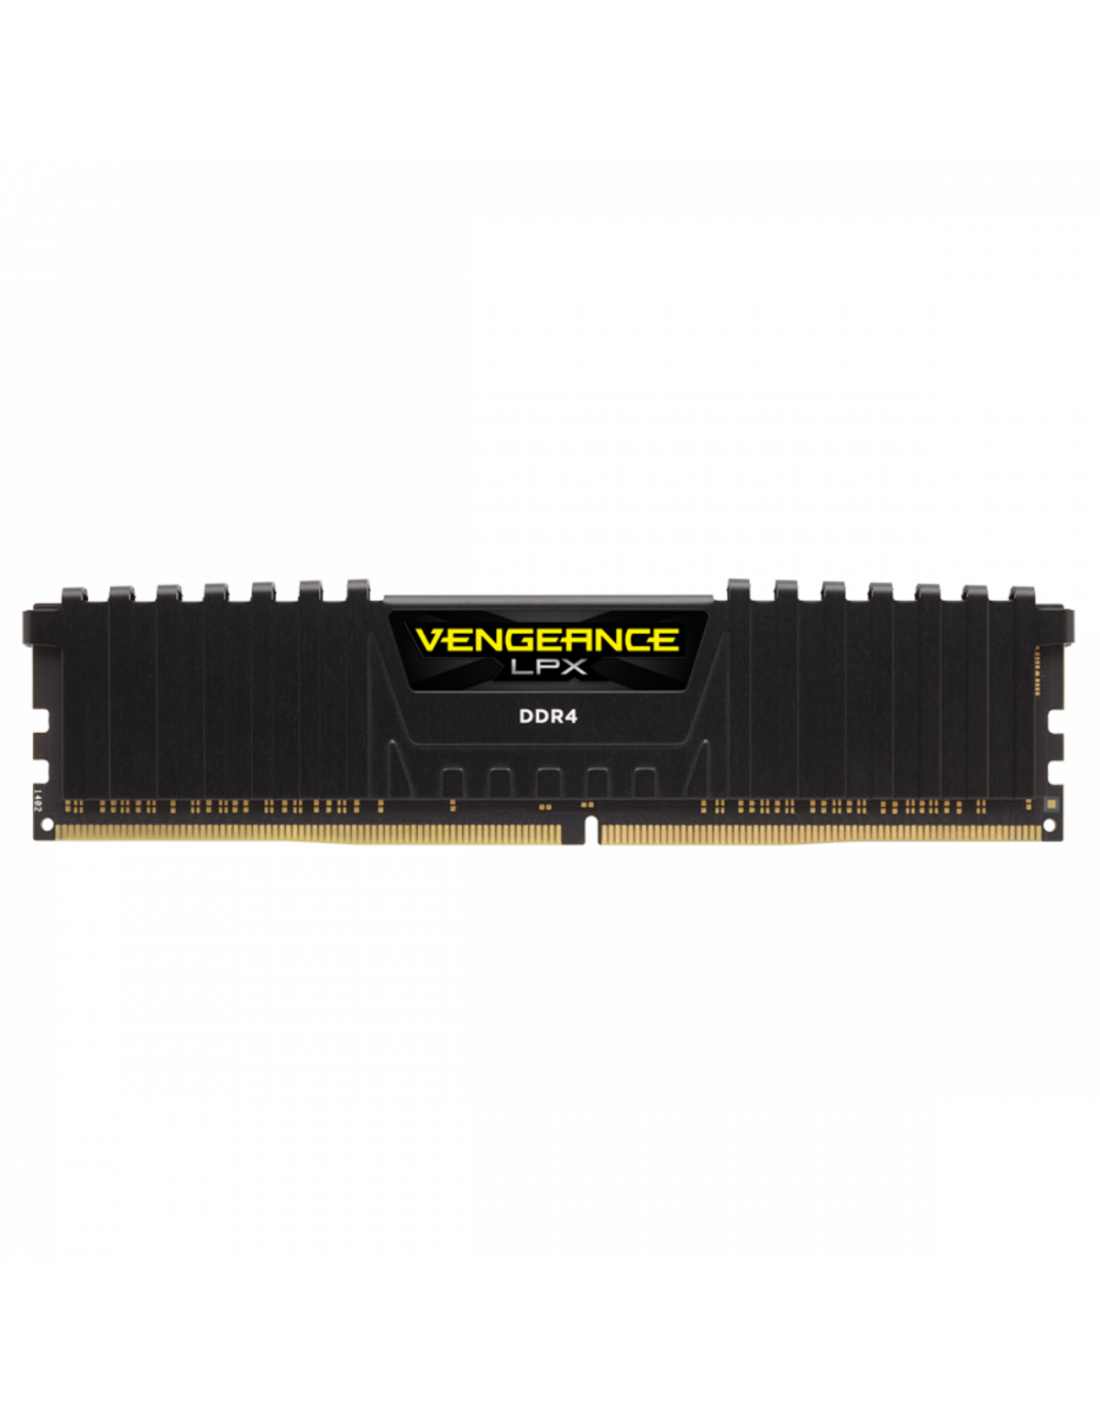 Ambicioso cebolla Gestionar Corsair Vengeance LPX 16GB DDR4 3200 MHz - Comprar RAM 16GB